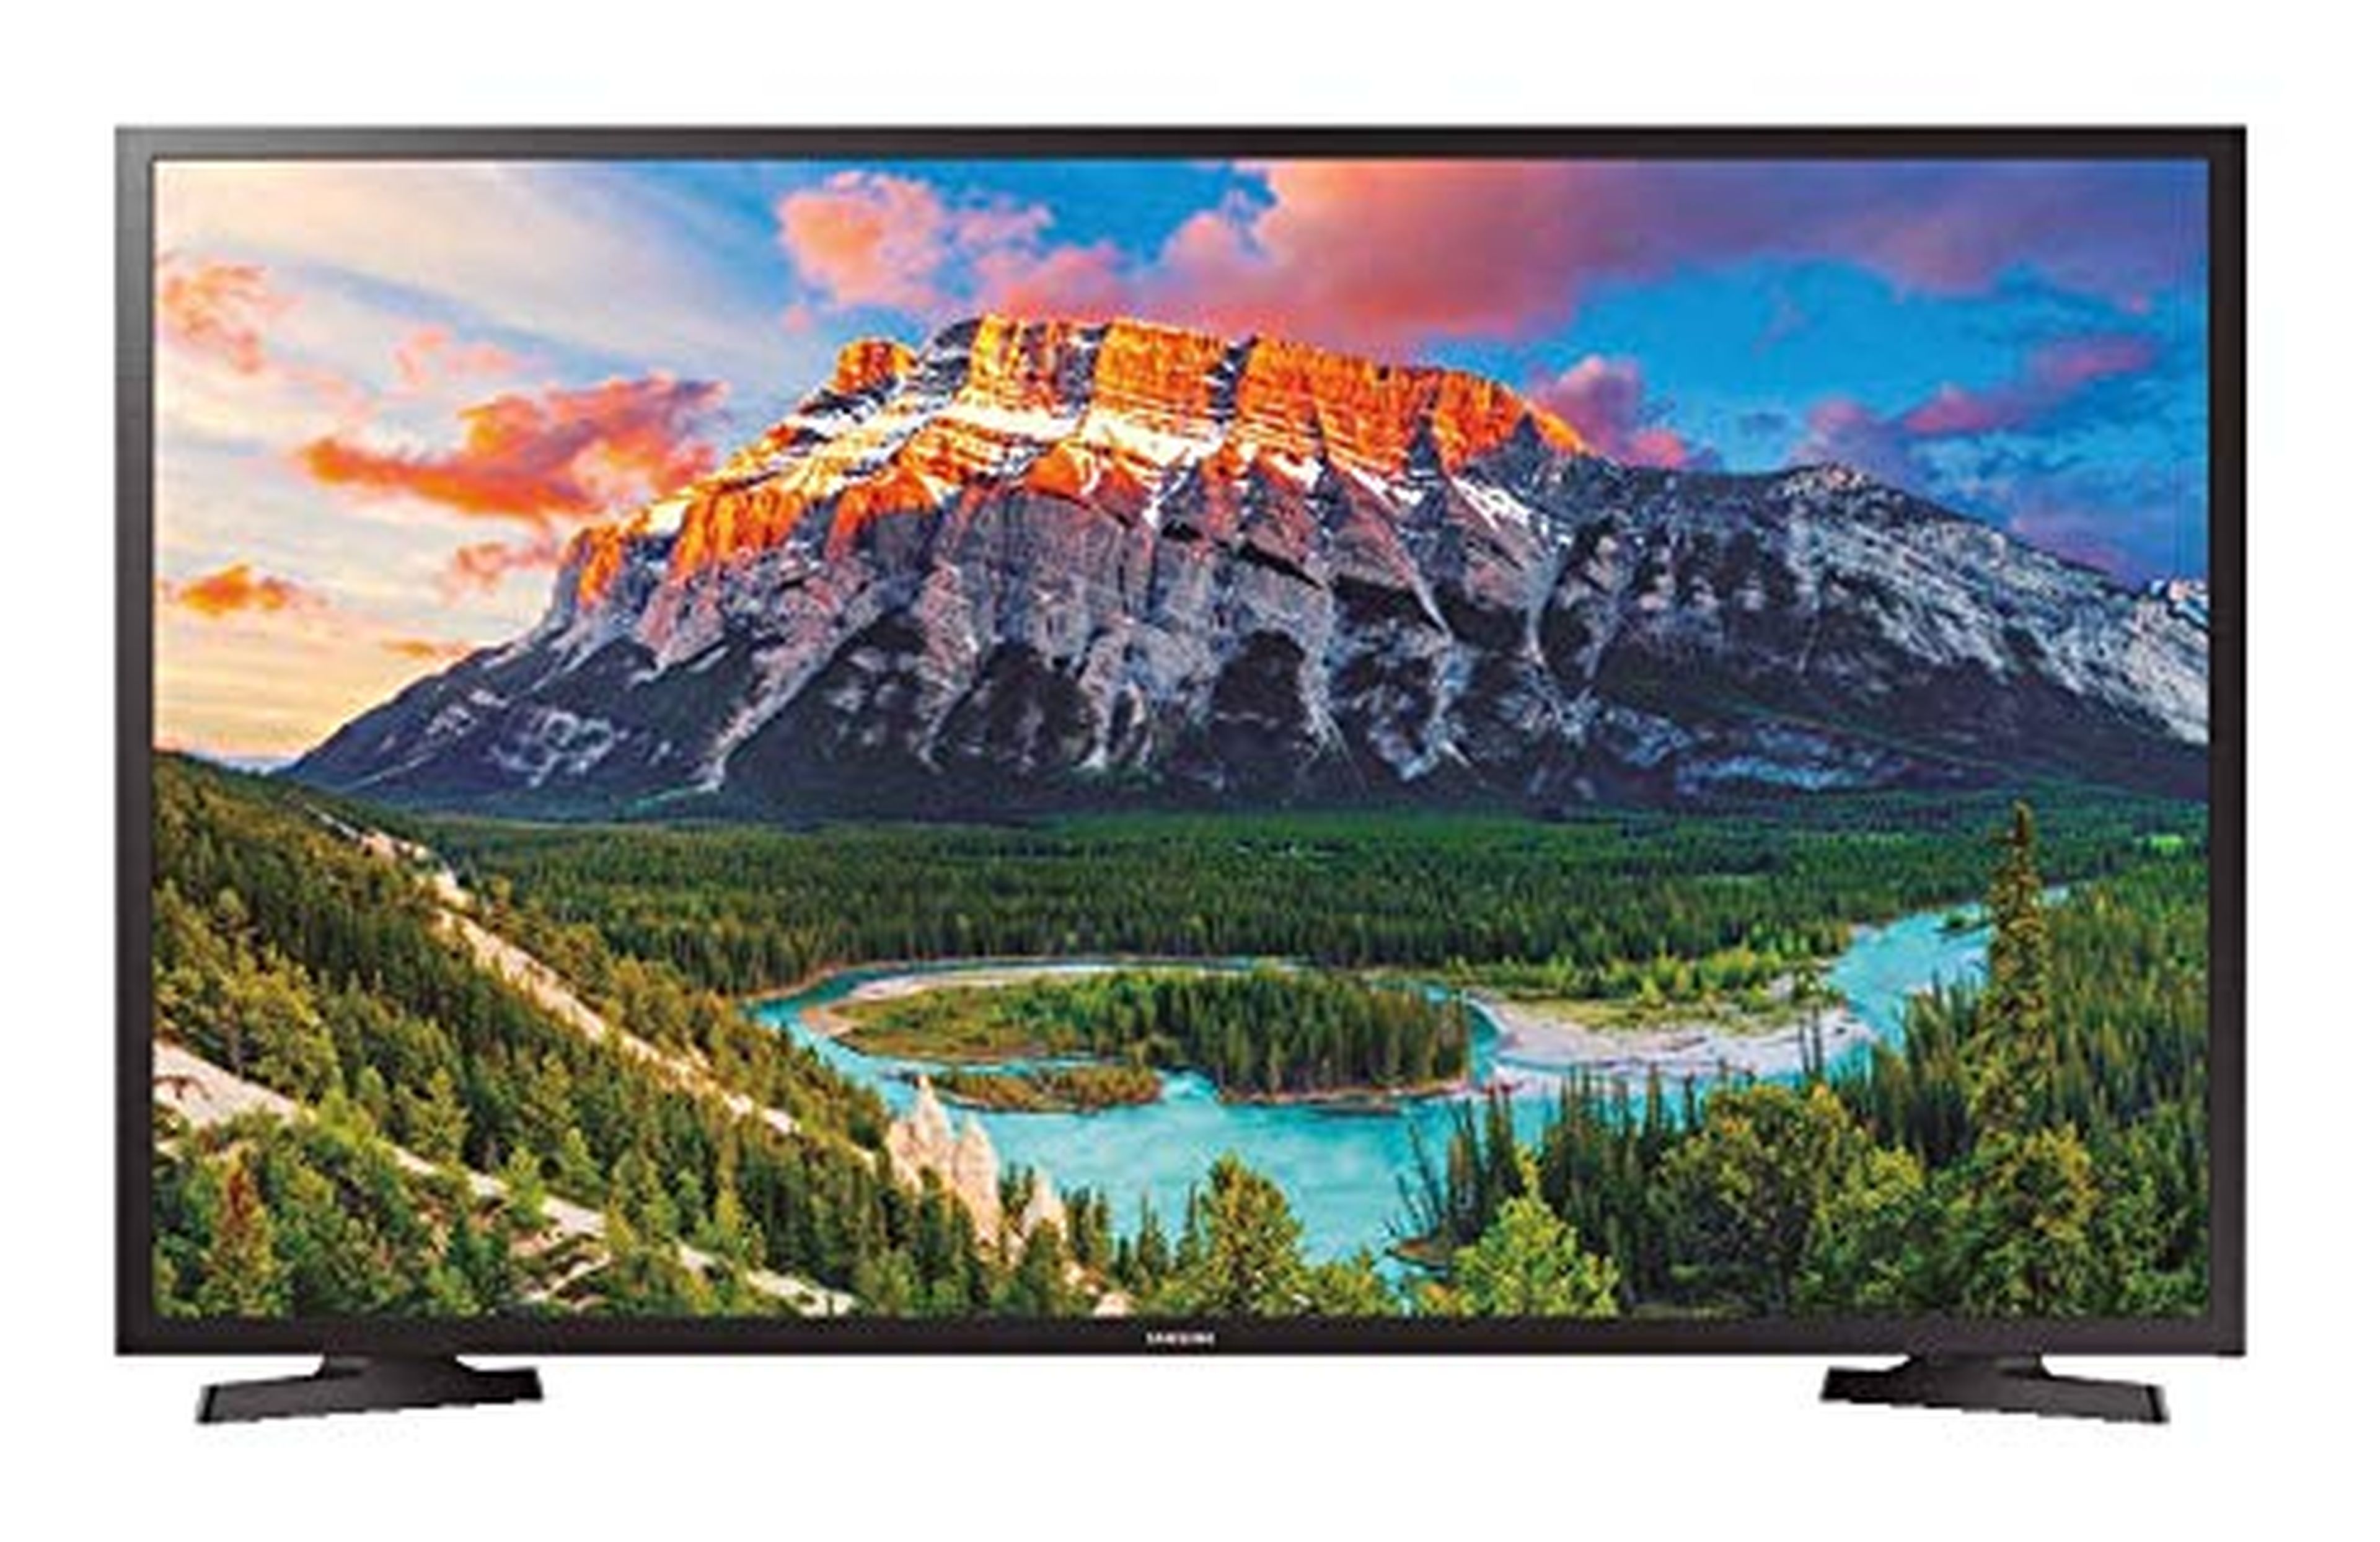 Una televisión Samsung Full HD de 32 pulgadas